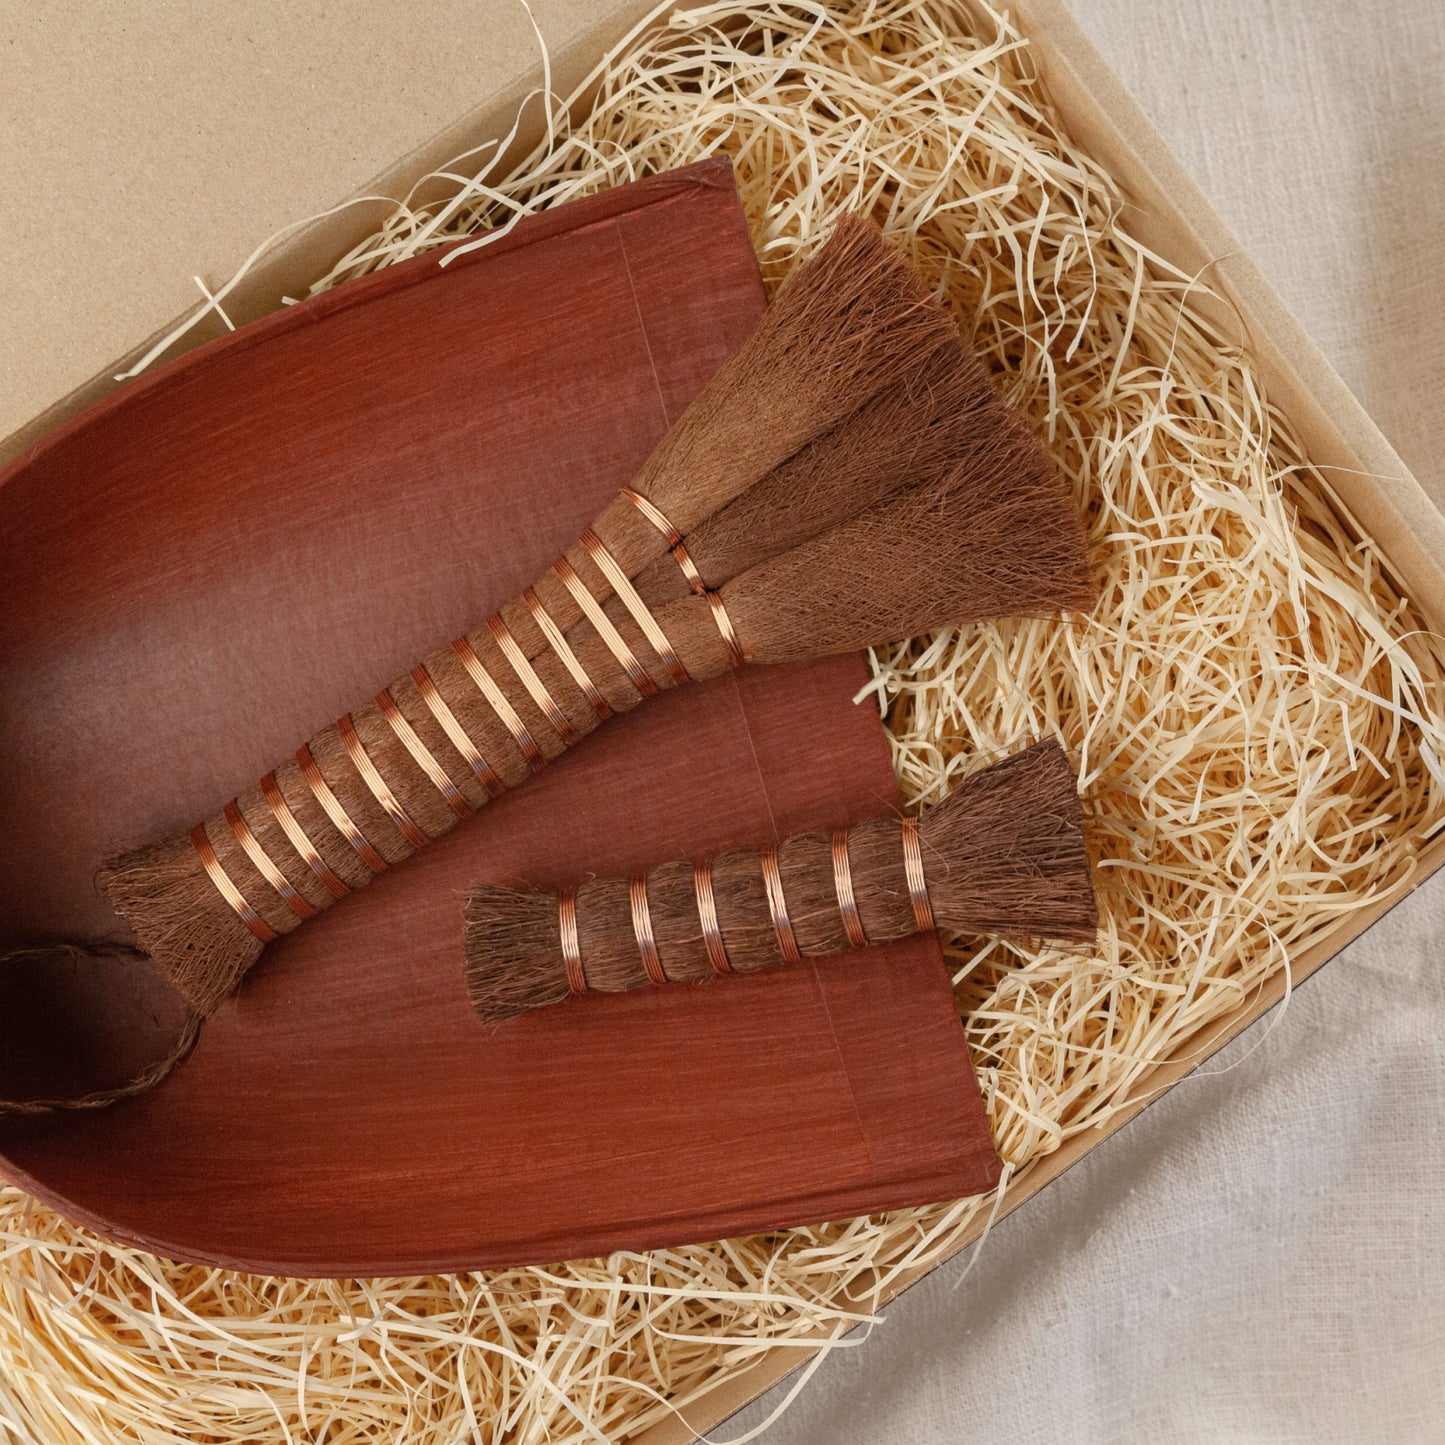 Shuro Brush Gift Set